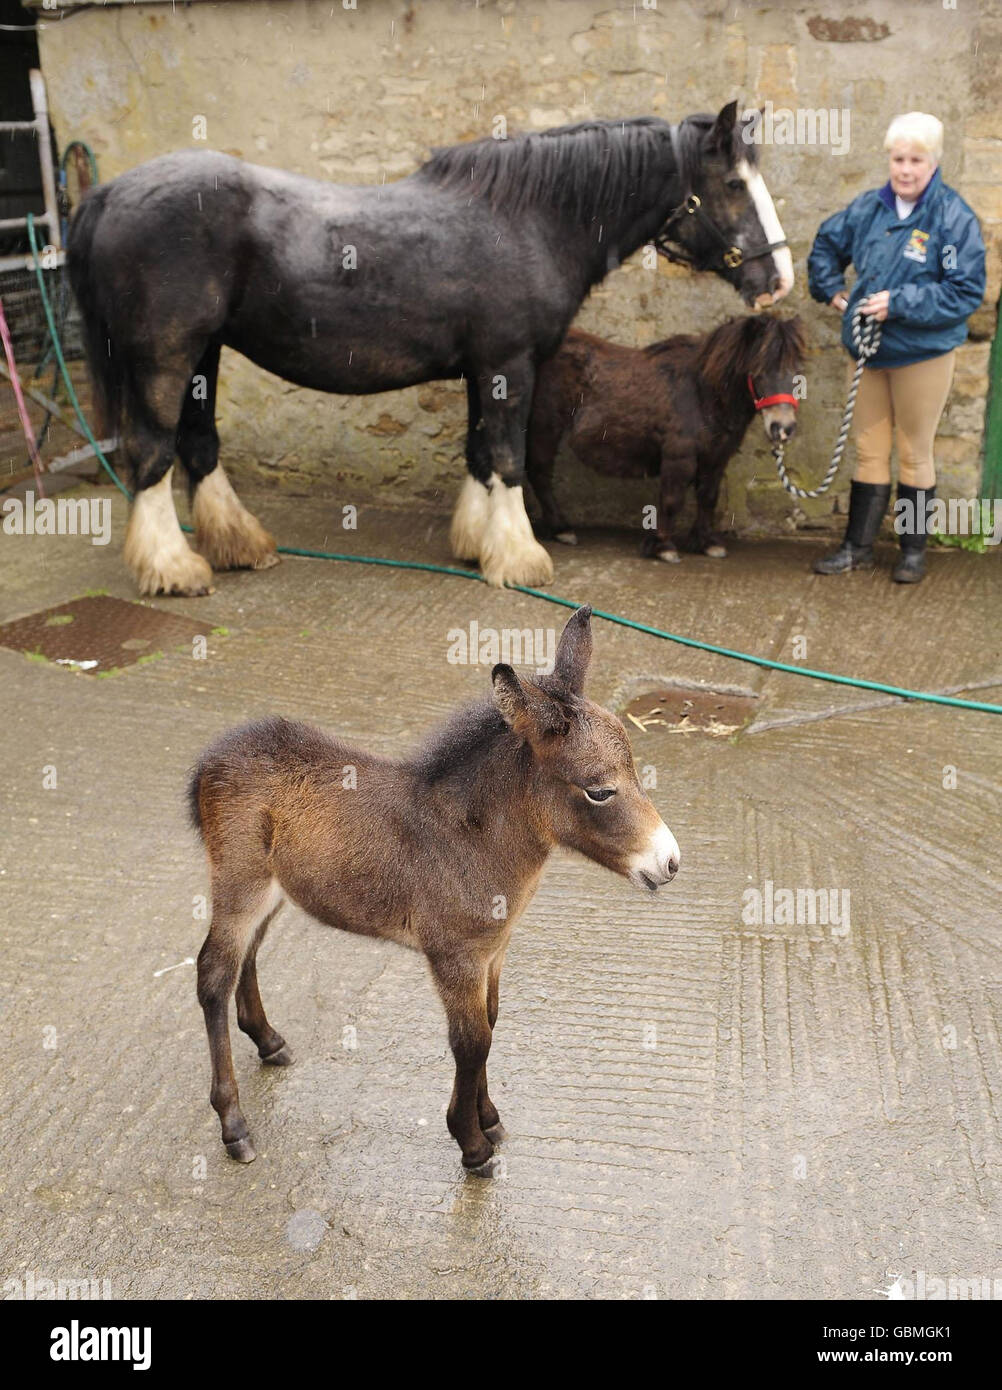 Pedro il mulo in miniatura, che potrebbe essere uno dei più piccoli al mondo, con il suo proprietario Maisie Watson a casa vicino a Consett, contea di Durham oggi. Foto Stock